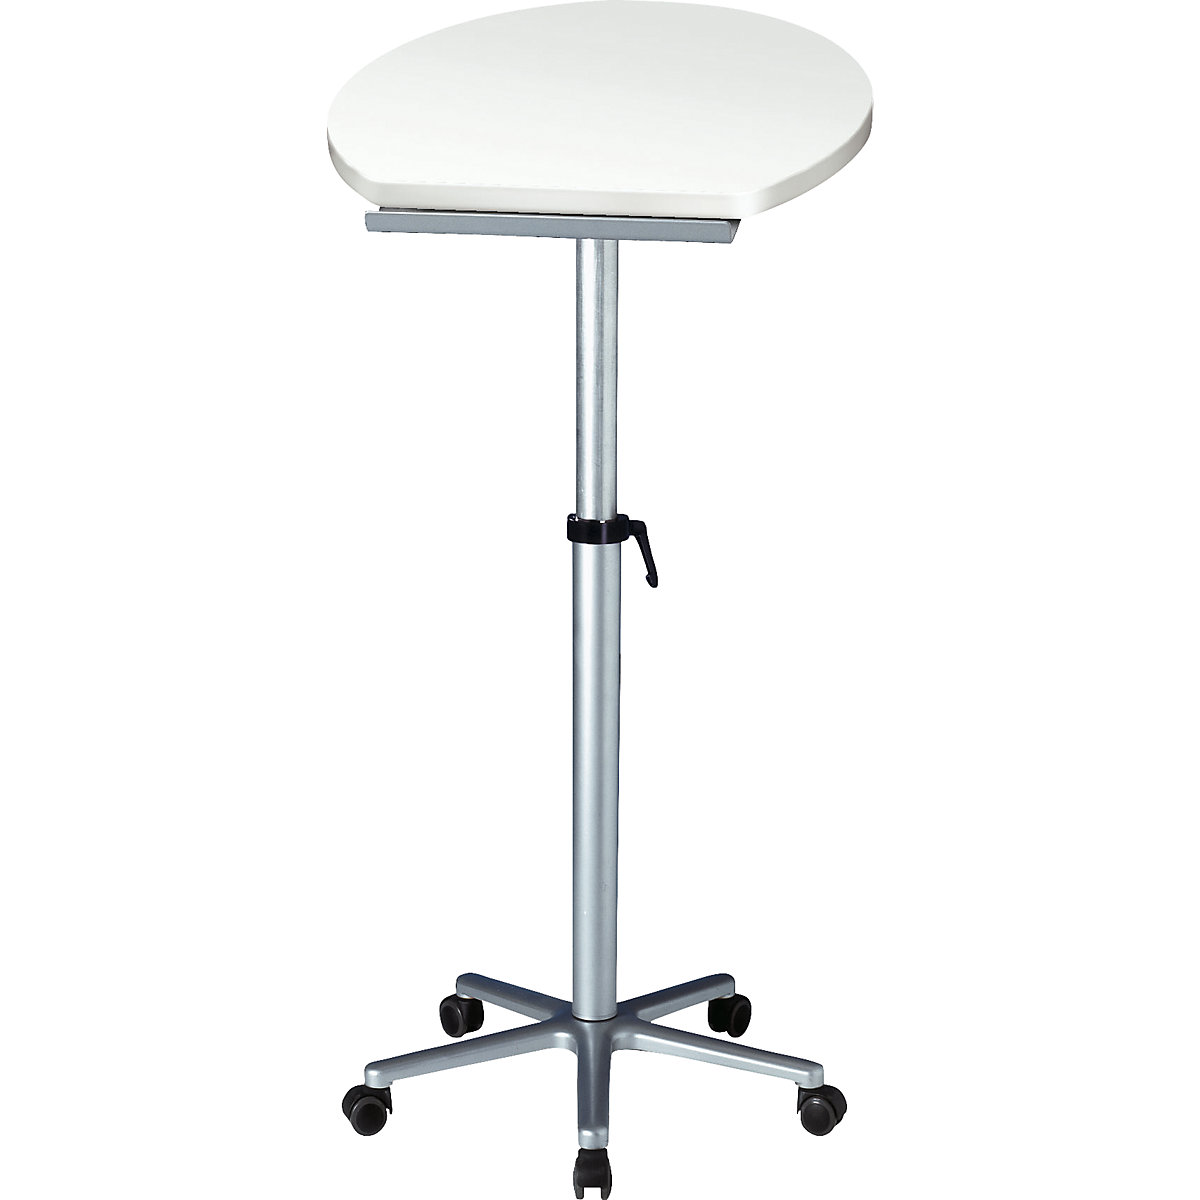 Pedestal desk, ergonomic - MAUL